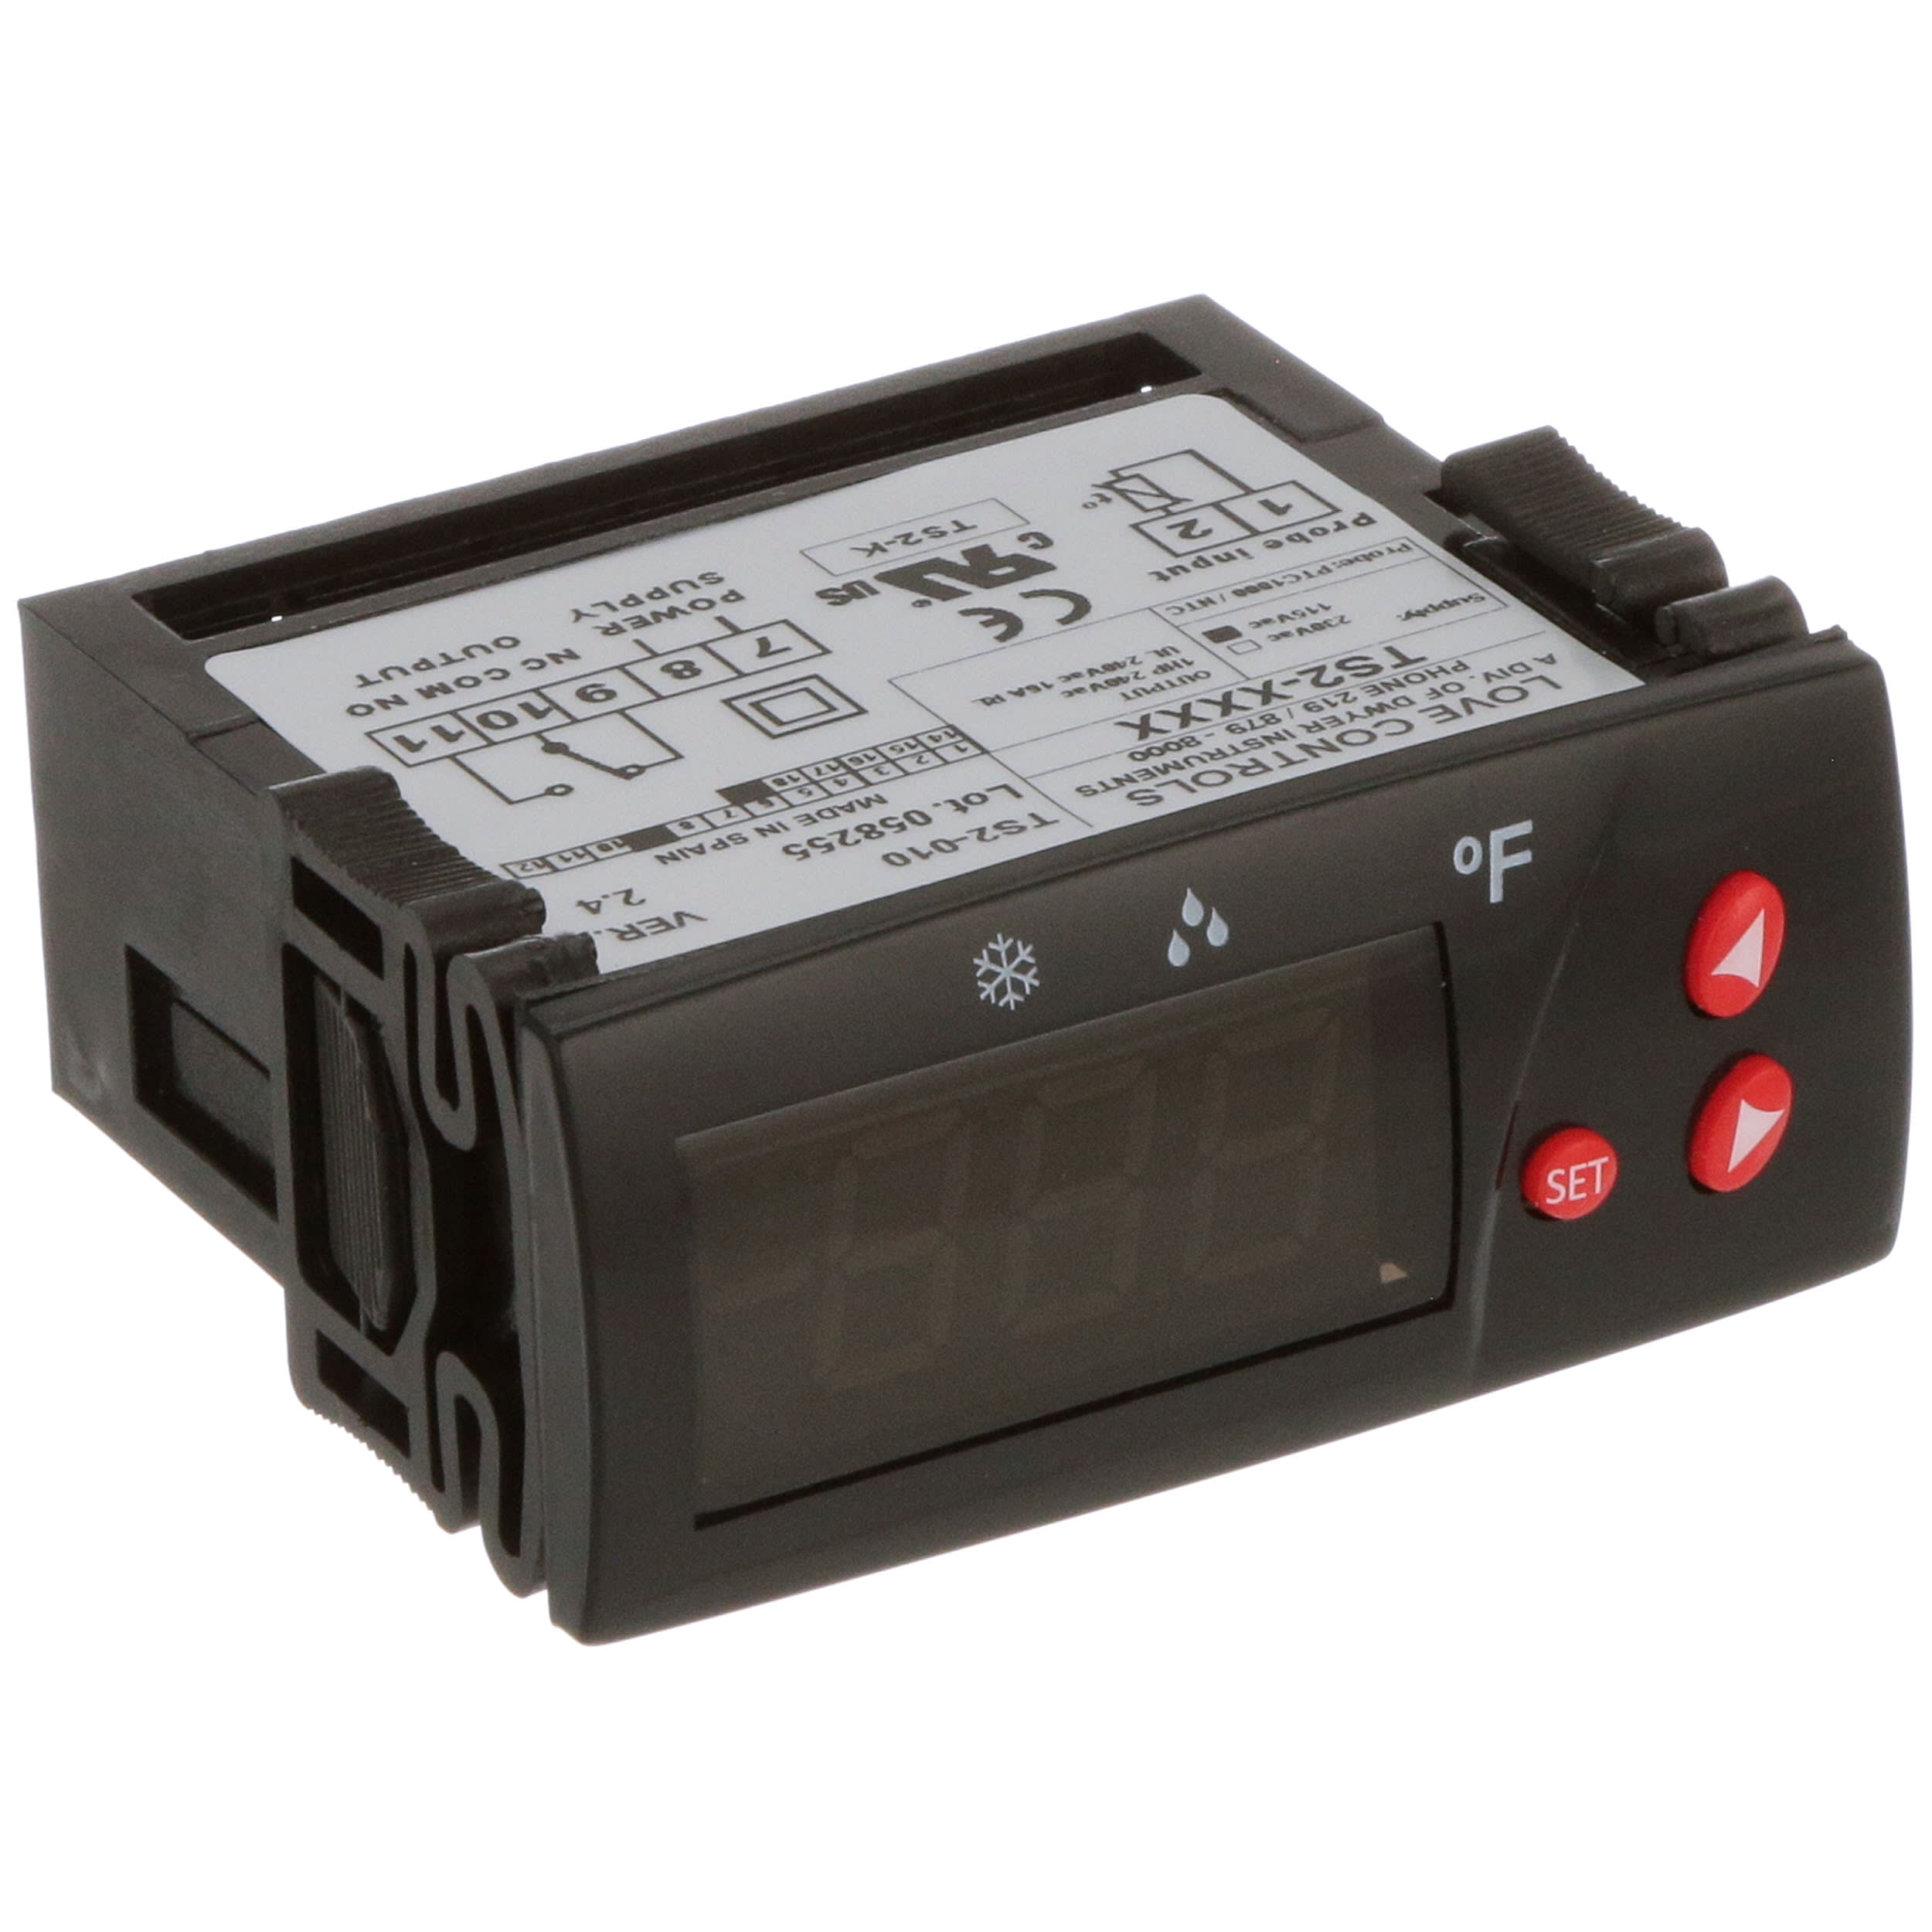 Cartucho termostático para dependencia Heatguard SKIT 200 001, DC150, A.C. Y ES, Válvulas de ducha 22 padres de BSM